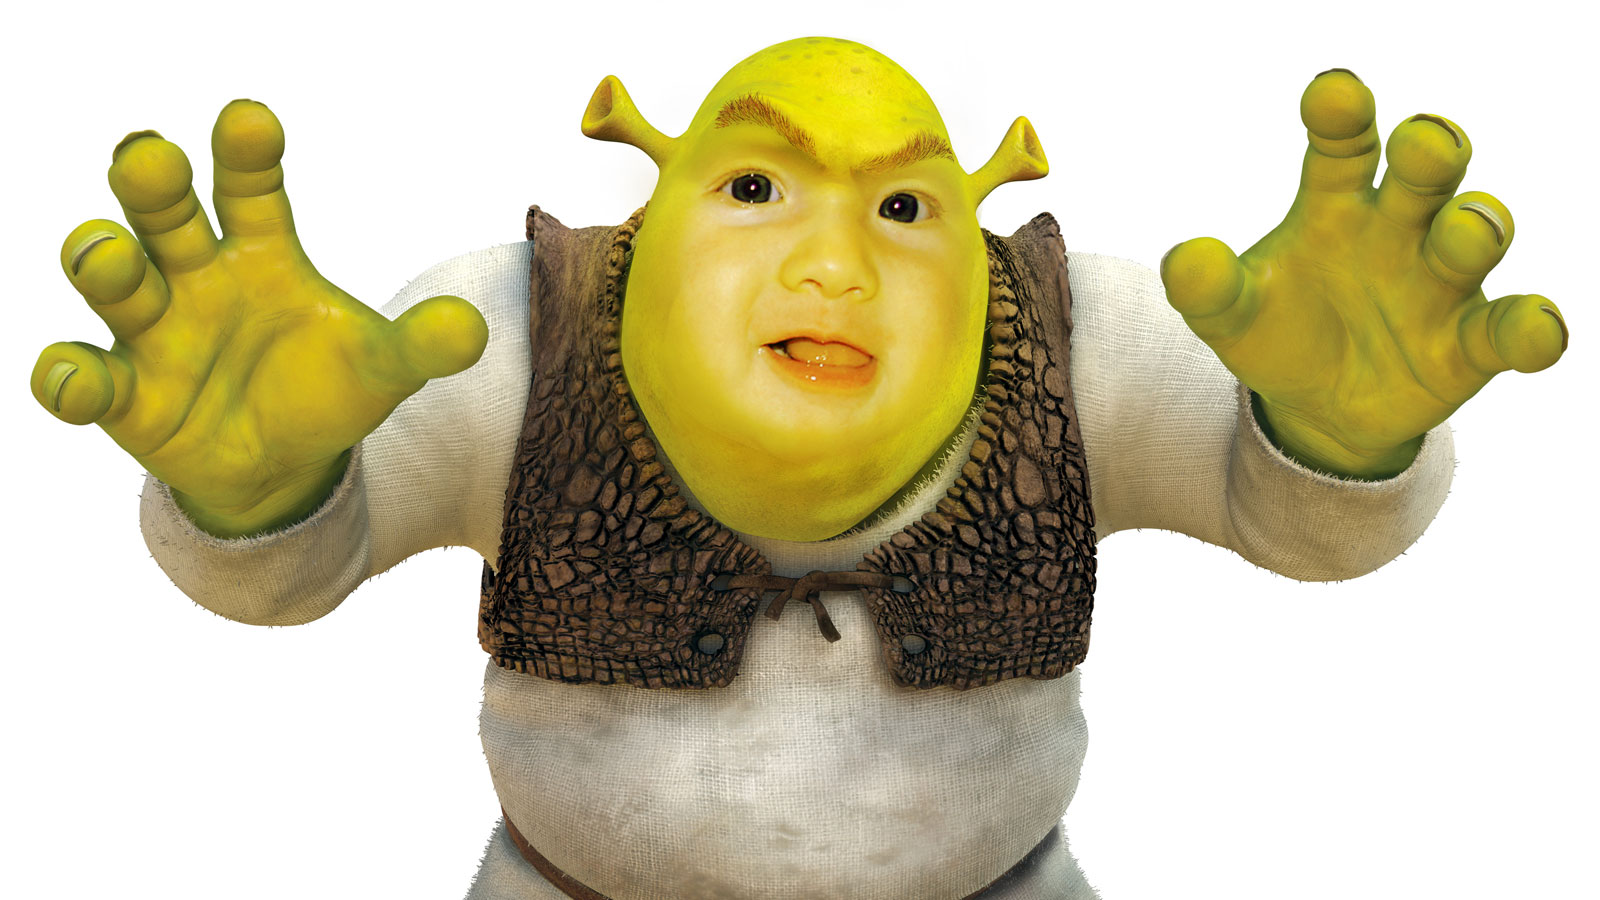 Popeye as Shrek